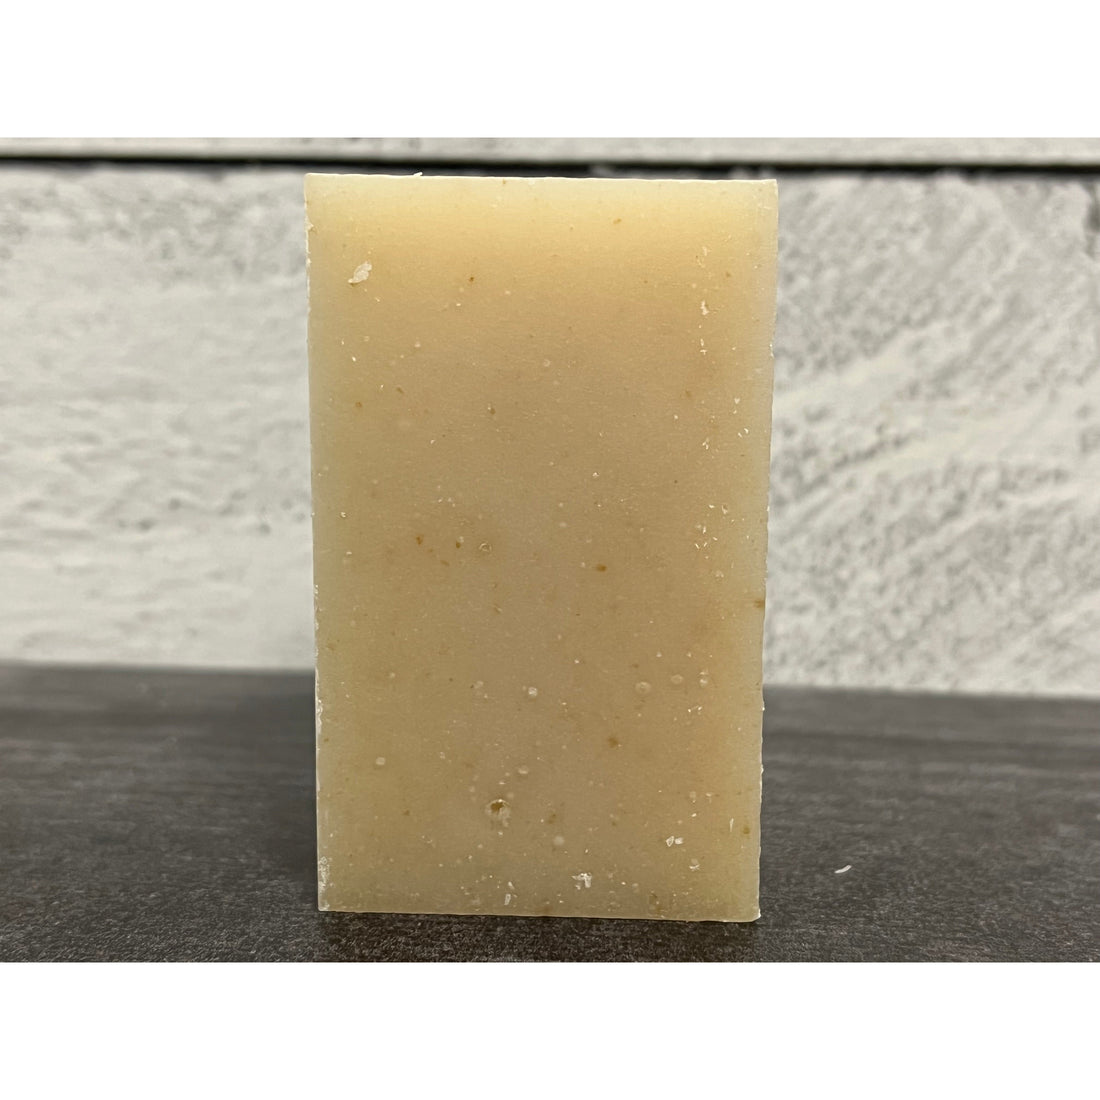 Coconut Milk Soap-Handmade Naturals Inc